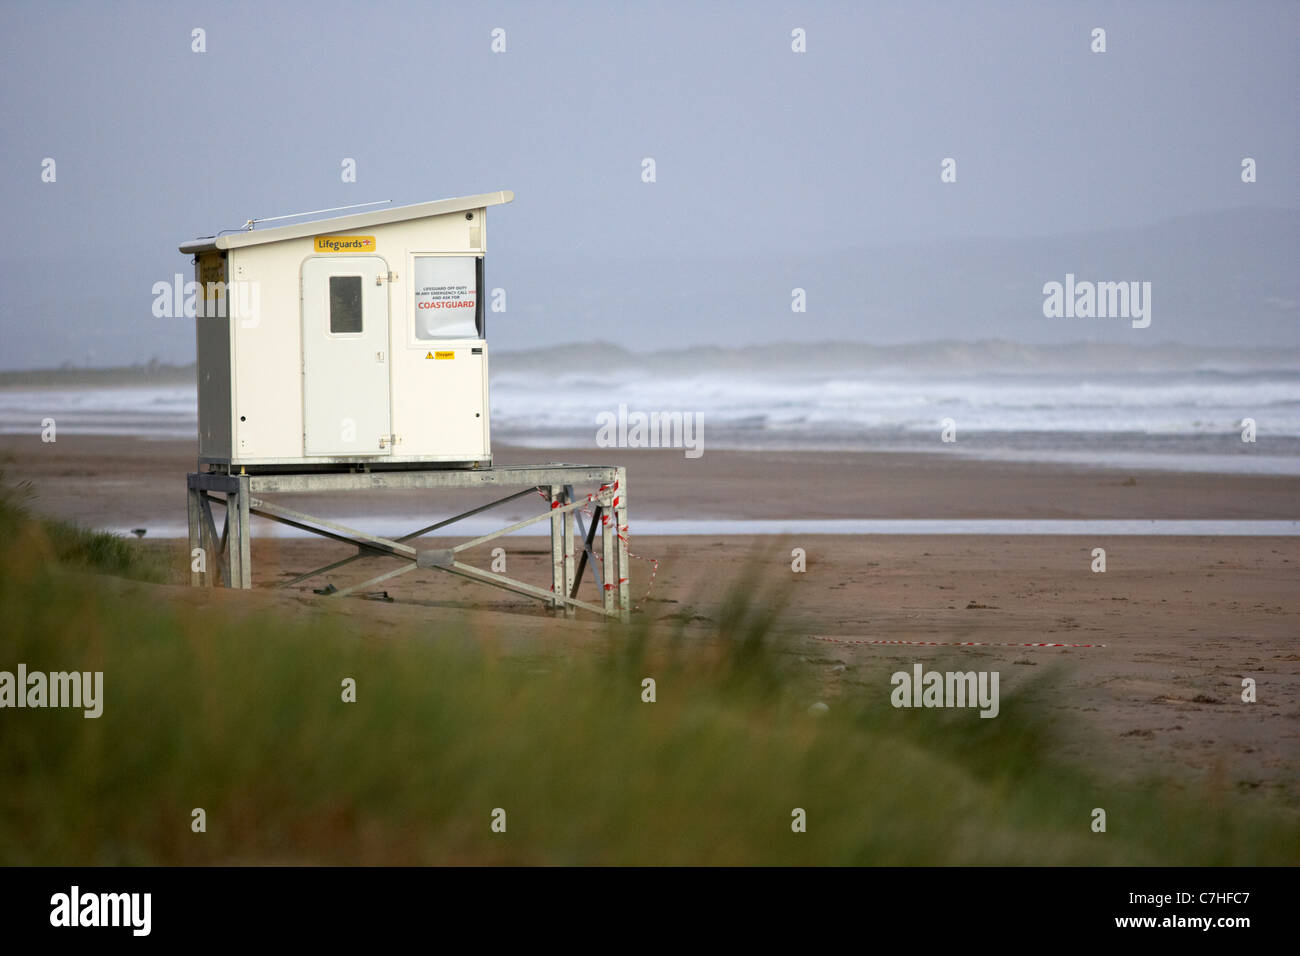 Les sauveteurs rnli verrouillé fermé hut en descente de benone strand beach sur un jour de tempête comté de Derry Londonderry en Irlande du Nord Banque D'Images